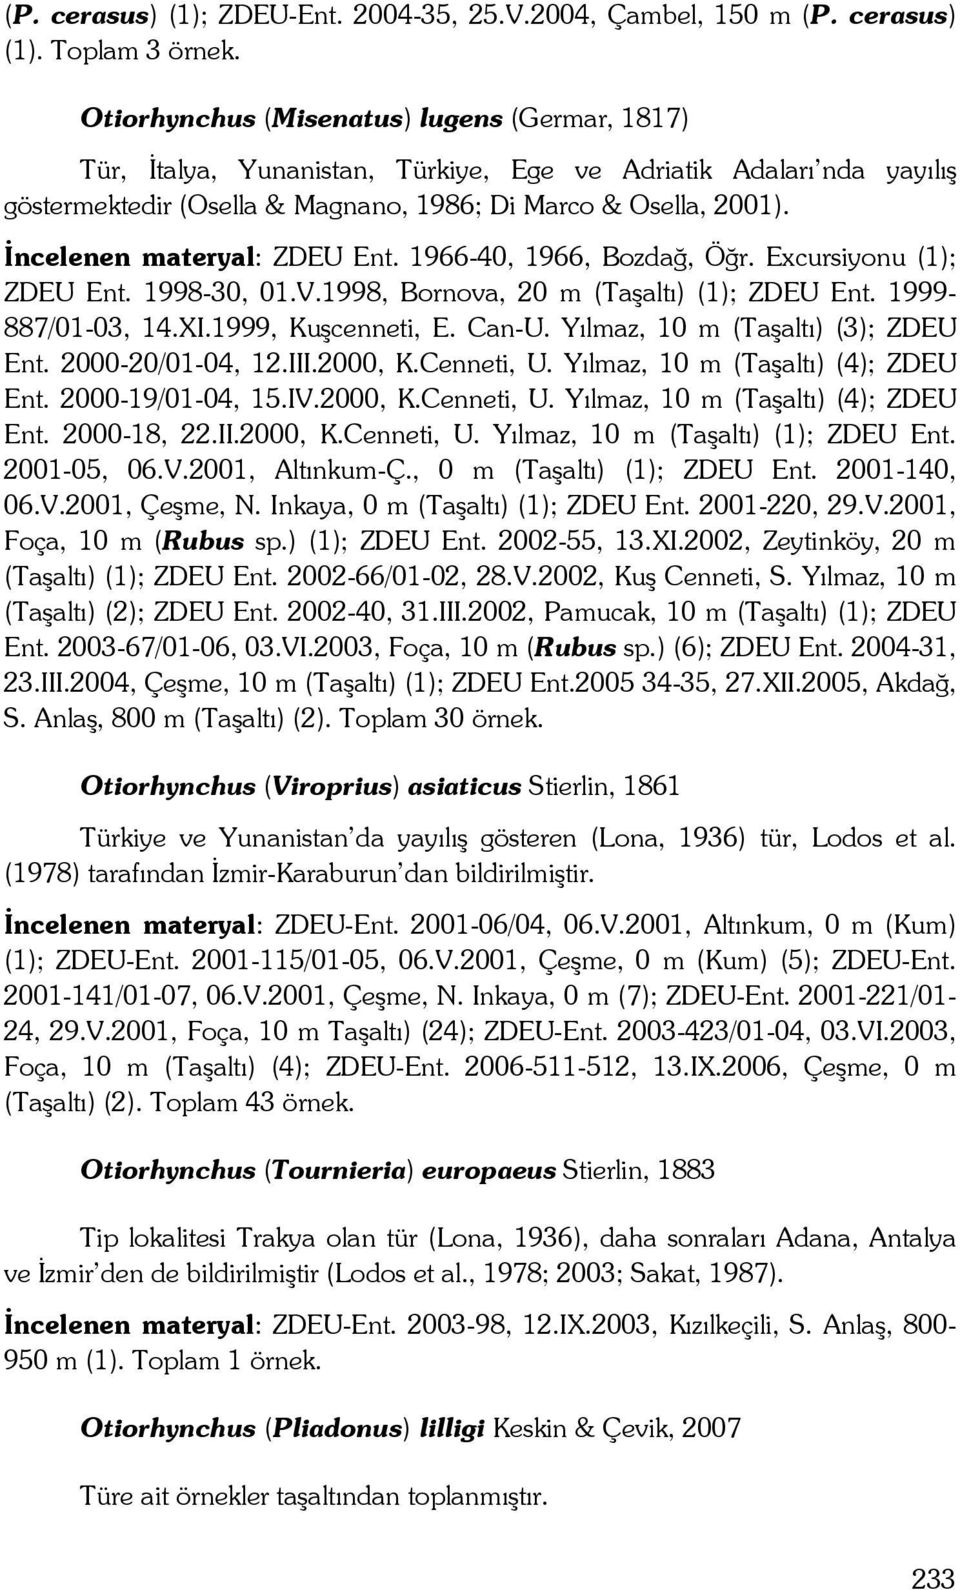 İncelenen materyal: ZDEU Ent. 1966-40, 1966, Bozdağ, Öğr. Excursiyonu (1); ZDEU Ent. 1998-30, 01.V.1998, Bornova, 20 m (Taşaltı) (1); ZDEU Ent. 1999-887/01-03, 14.XI.1999, Kuşcenneti, E. Can-U.